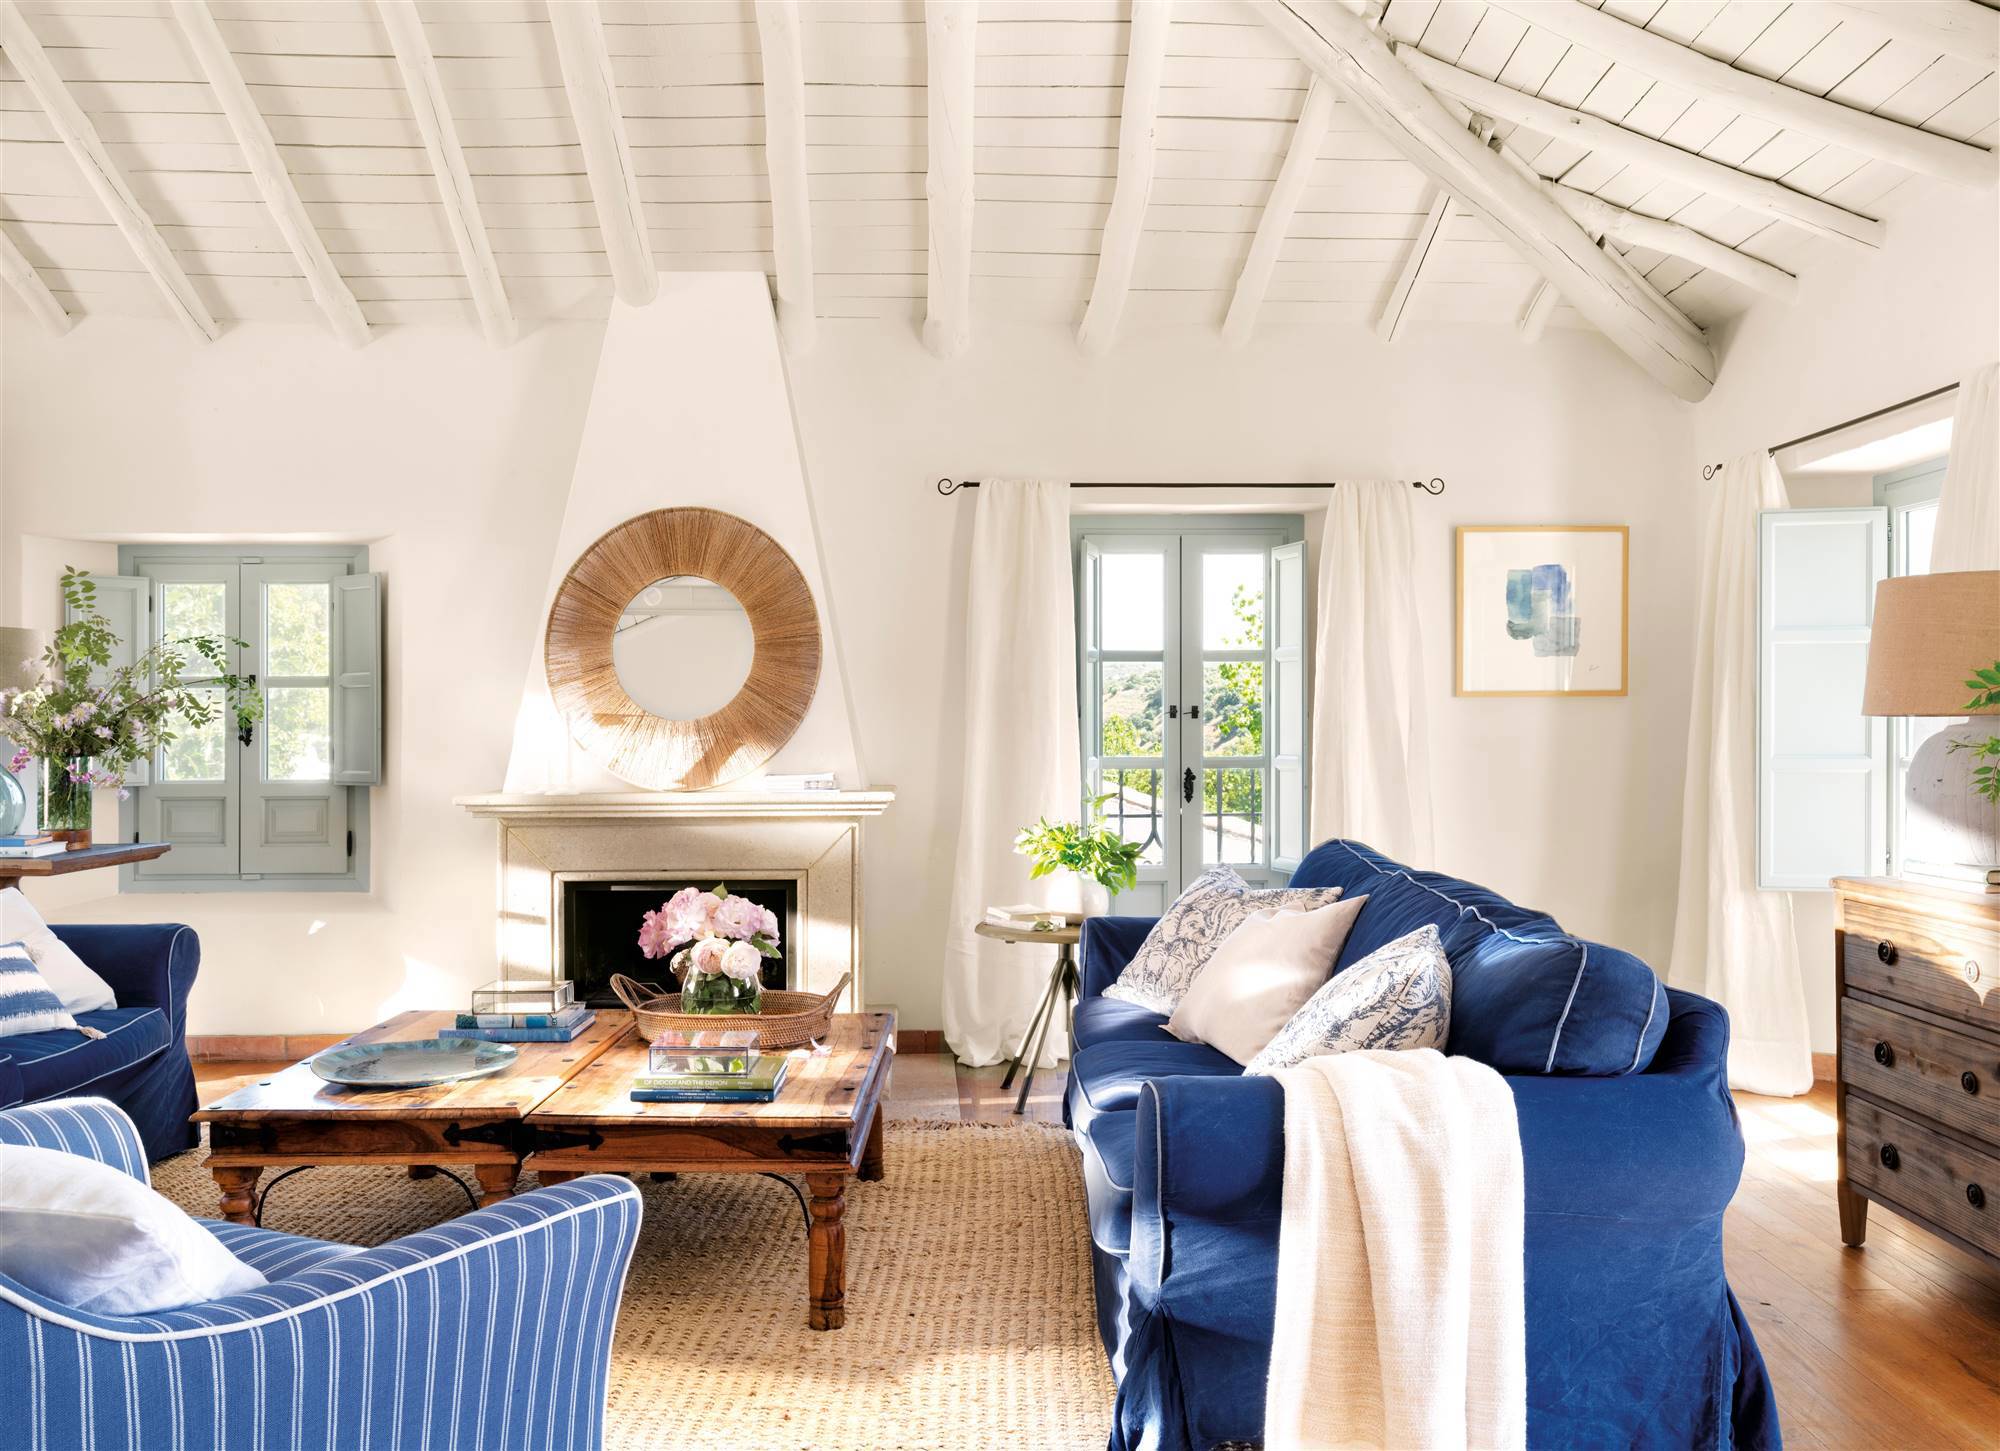 Salón con chimenea, sofás azules y butaca azul con rayas blancas.